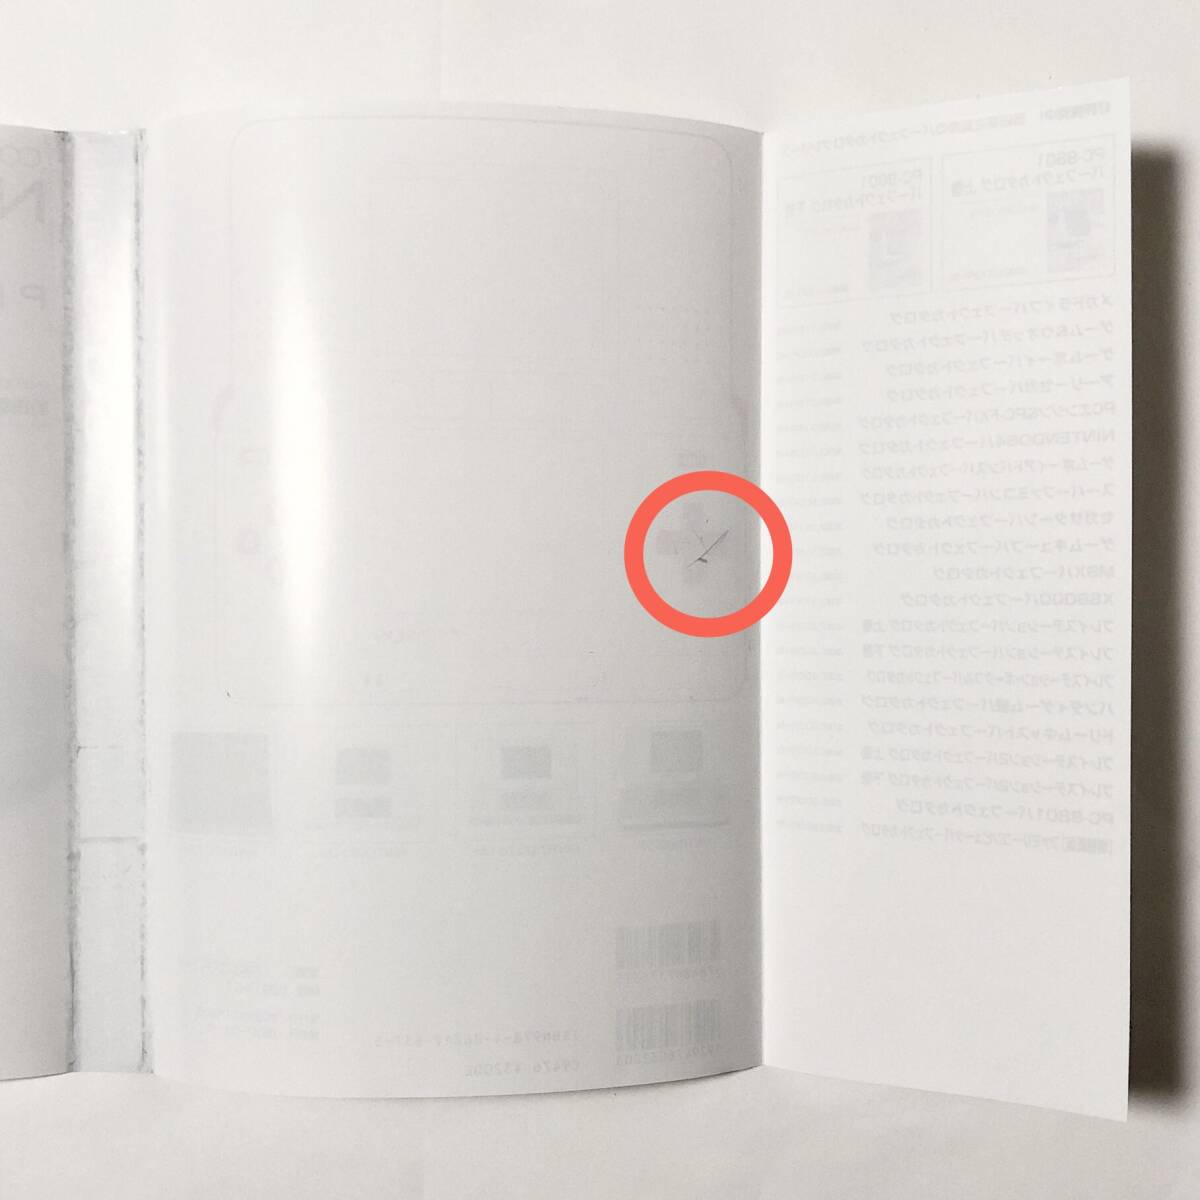 中古本 初版 ニンテンドーDS パーフェクトカタログ 痛みあり / Nintendo DS Perfect Catalogue Book _画像7